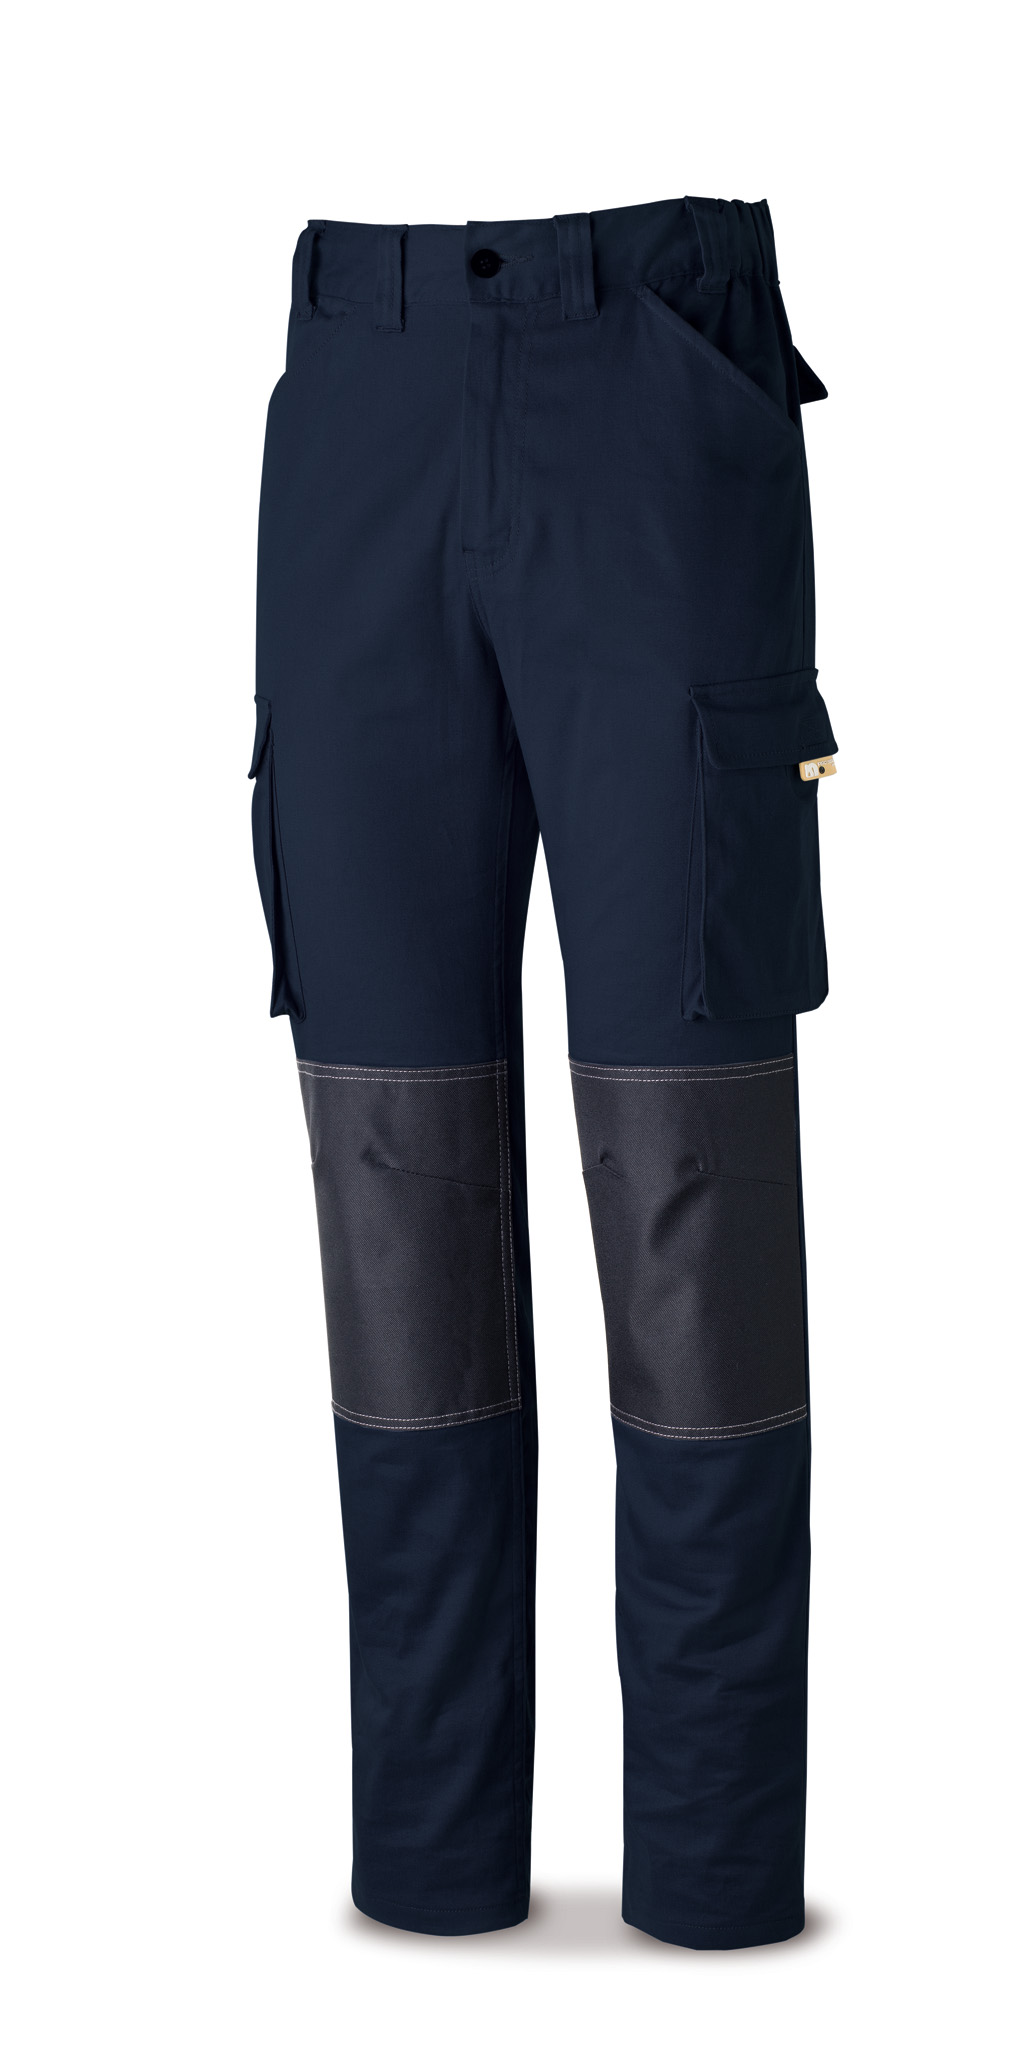 588-PSTRA Vestuario Laboral Pro Series Calças ELÁSTICO, algodão e elastano.Cor Azul marinho.